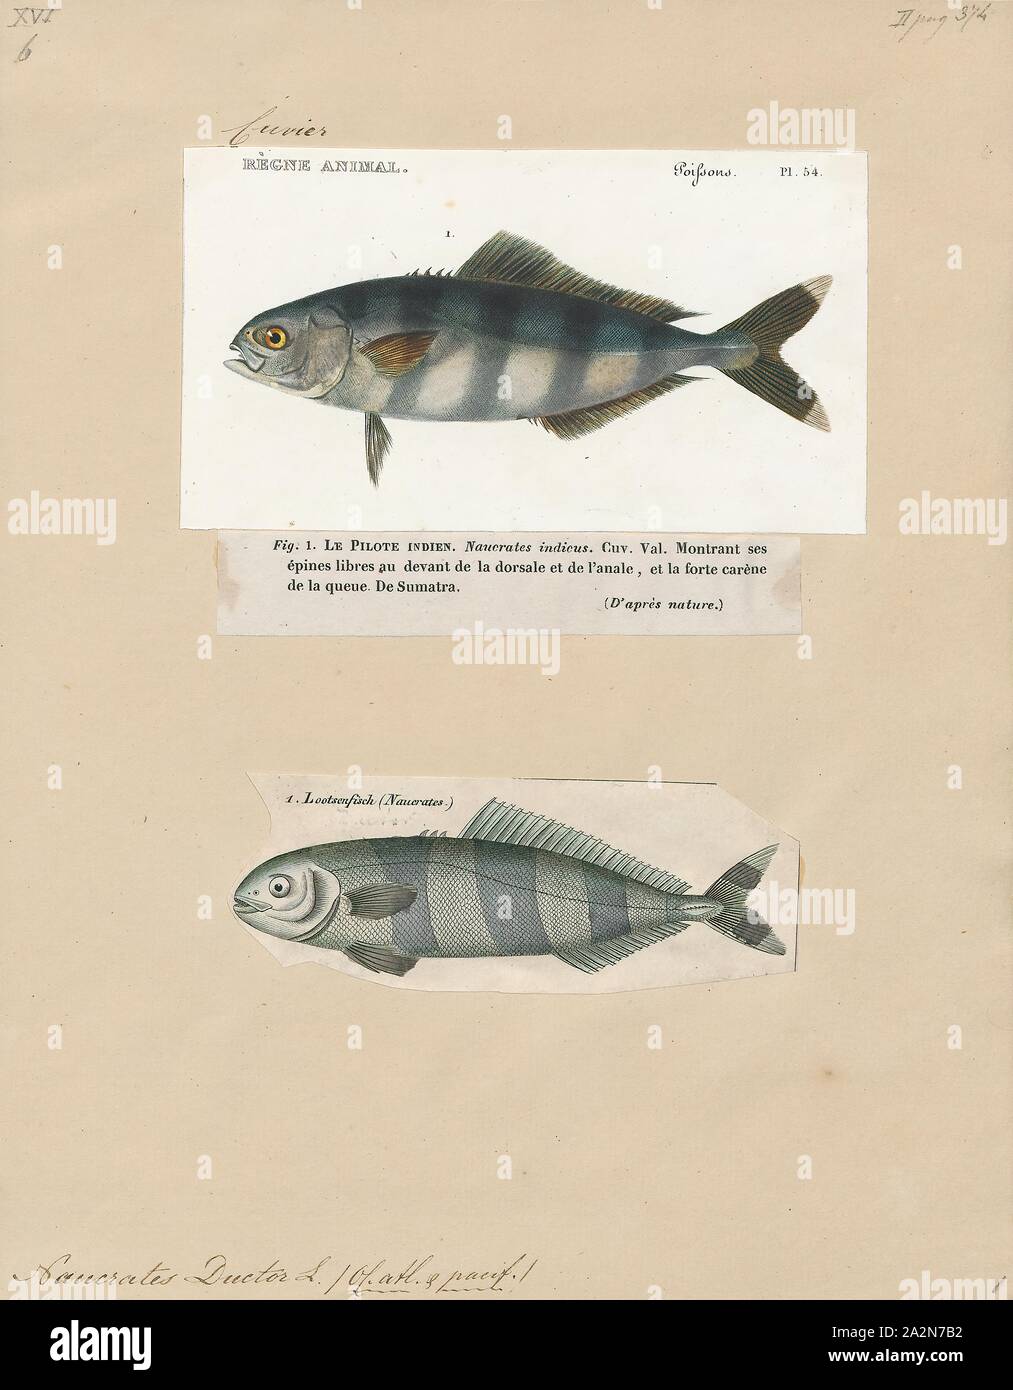 Naucrates ductor, imprimir el pez piloto (Naucrates ductor) es un pez carnívoro de la familia de jureles, o jackfish, Carangidae. Está ampliamente distribuida y vive en los mares abiertos o tropical cálido, 1700-1880. Foto de stock